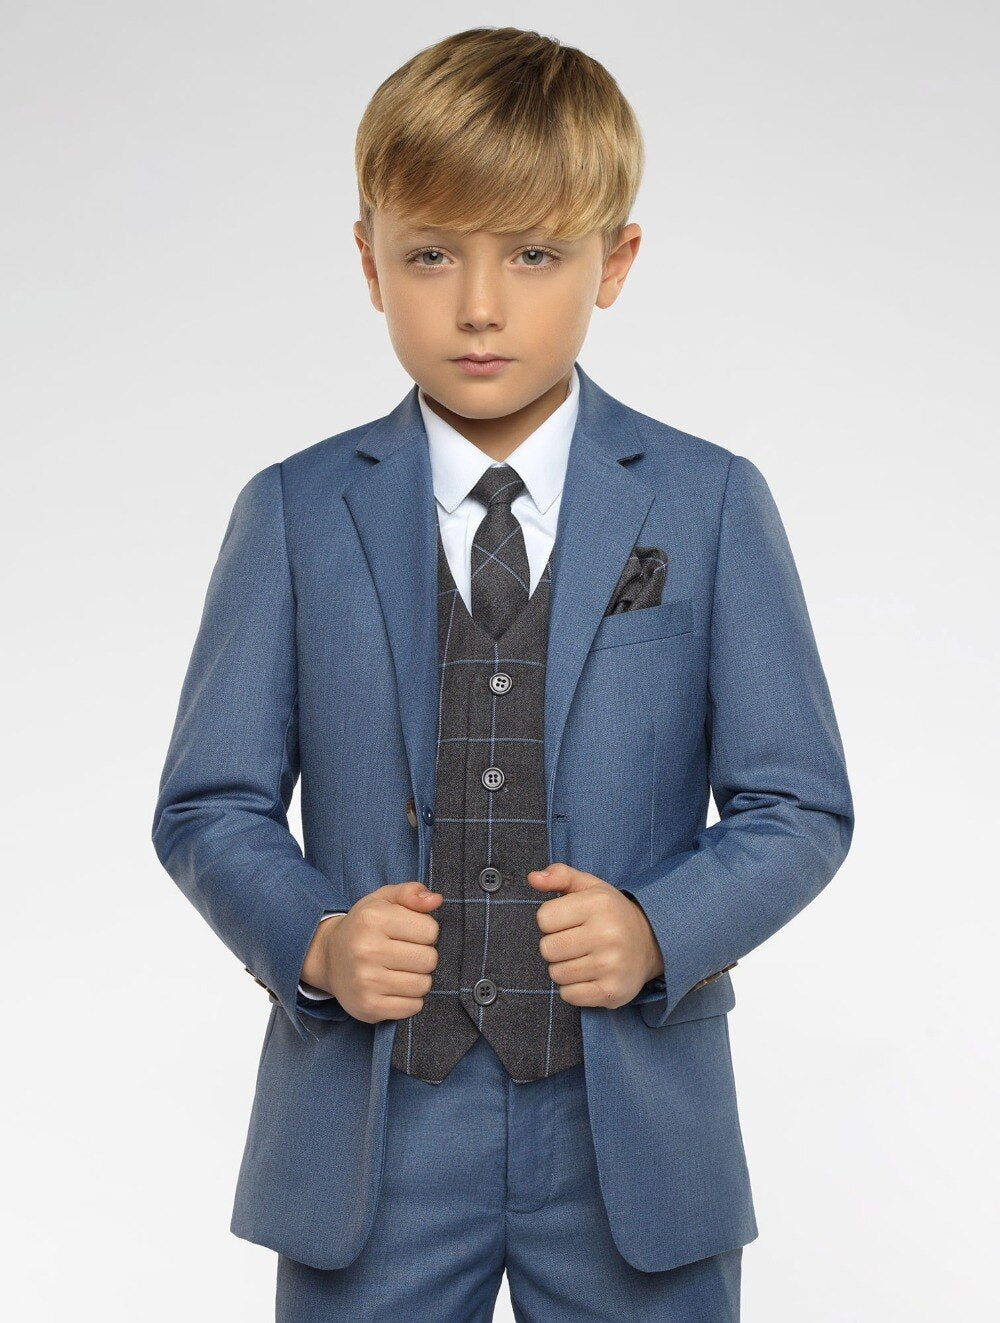 Boys Suits 3 Pieces (Jacket+Pants +Vest) - luxebabyco